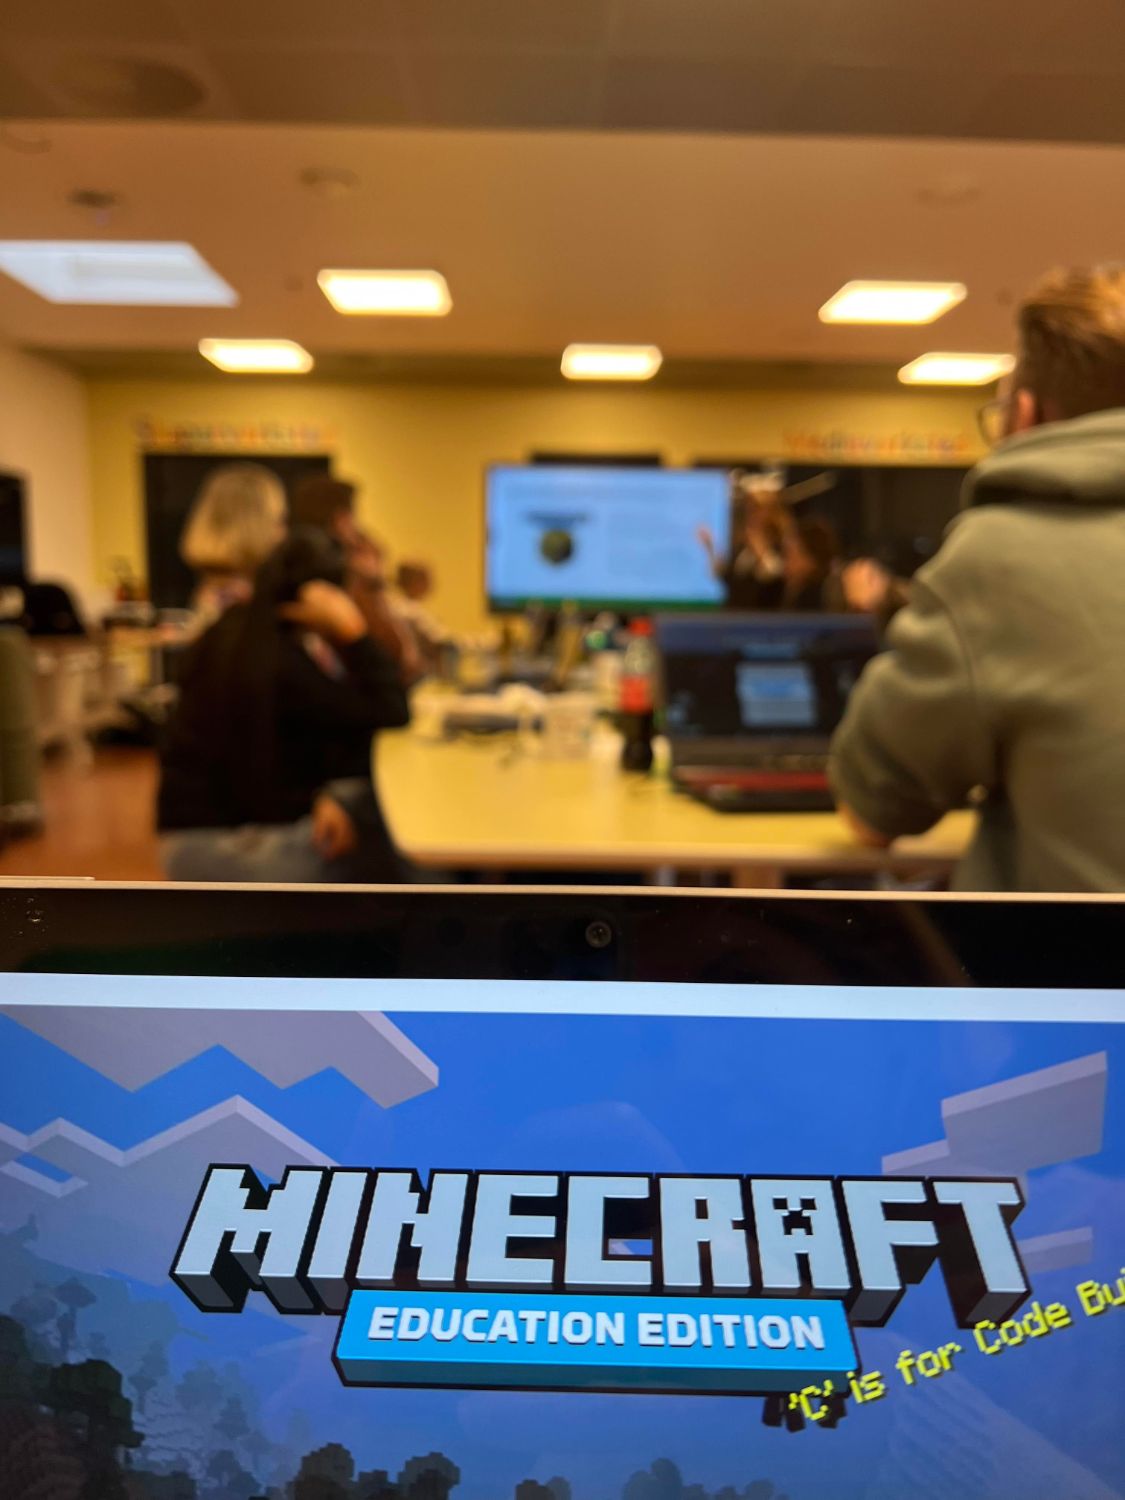 Viser PC med Minecraft logo og workshopdeltakere som sitter i bakgrunnen